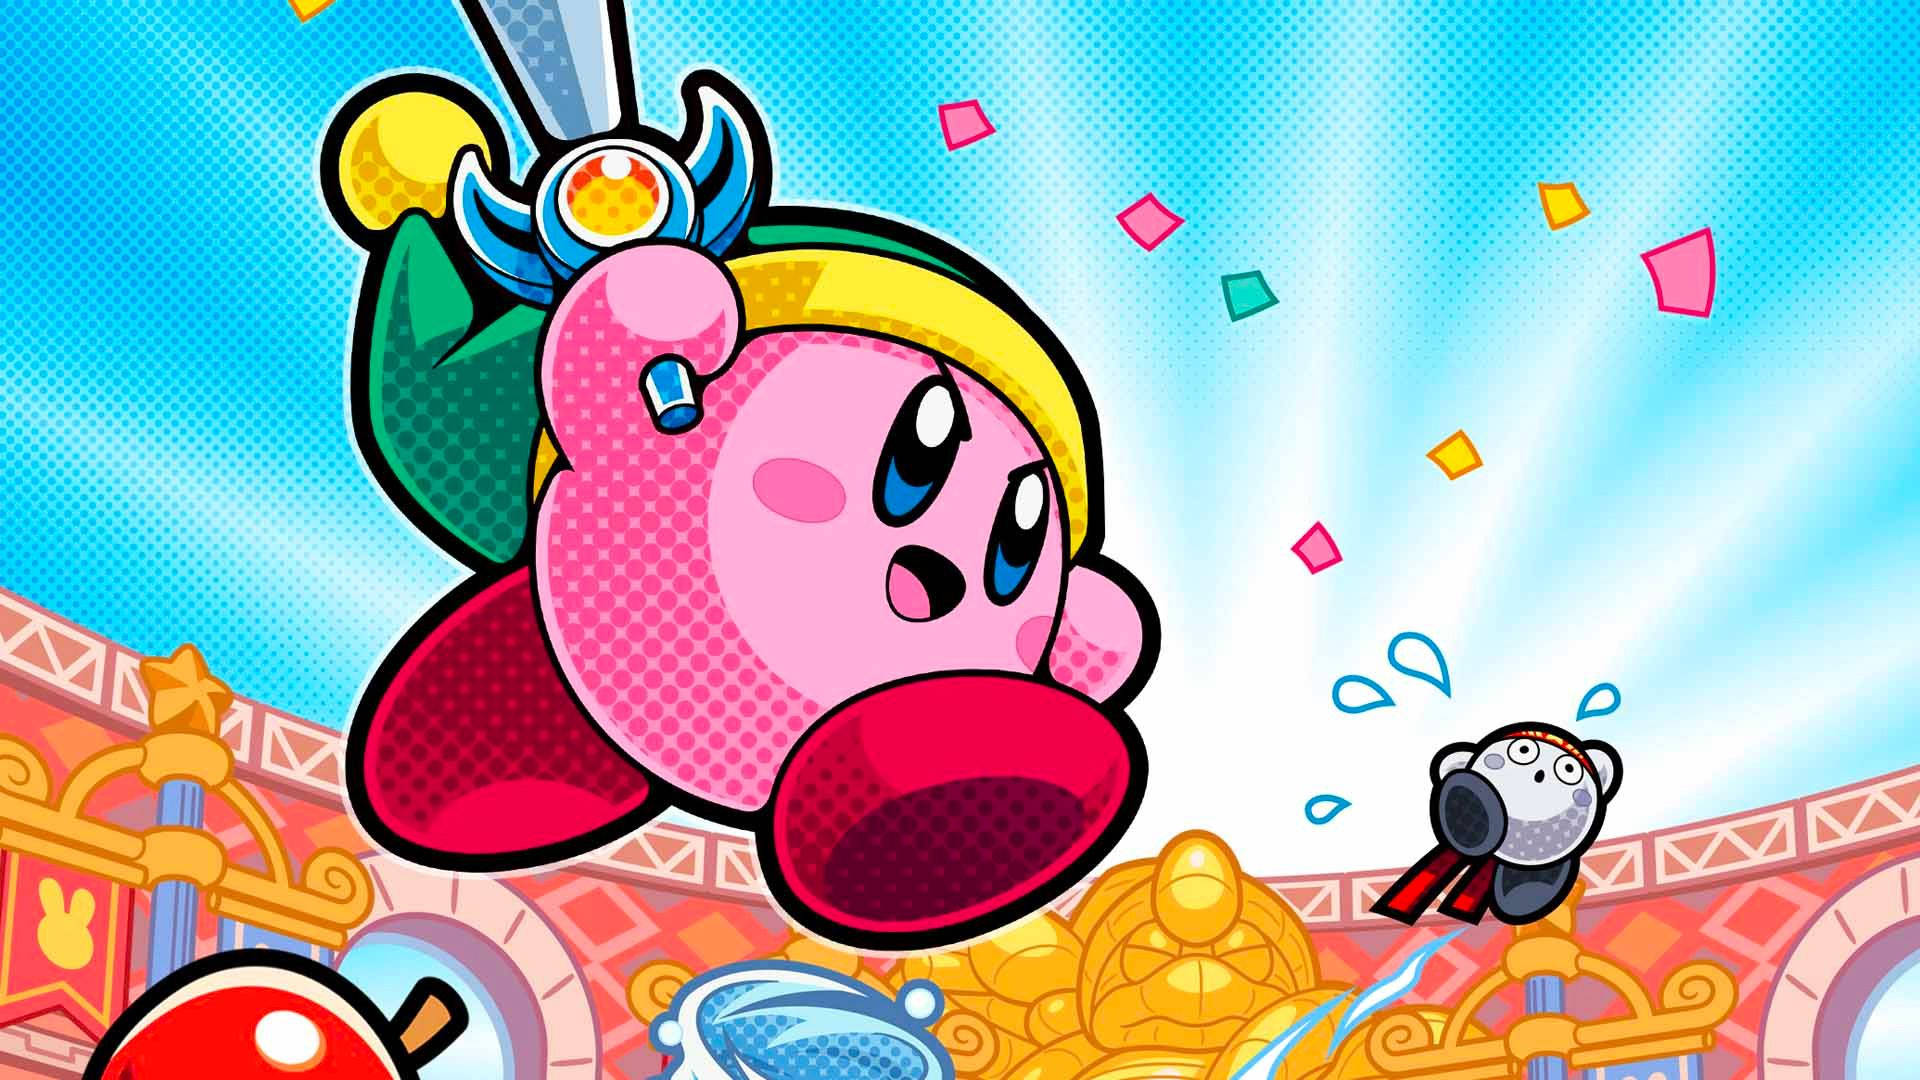 Cool ultra-HD Kirby wallpaper in battle royal